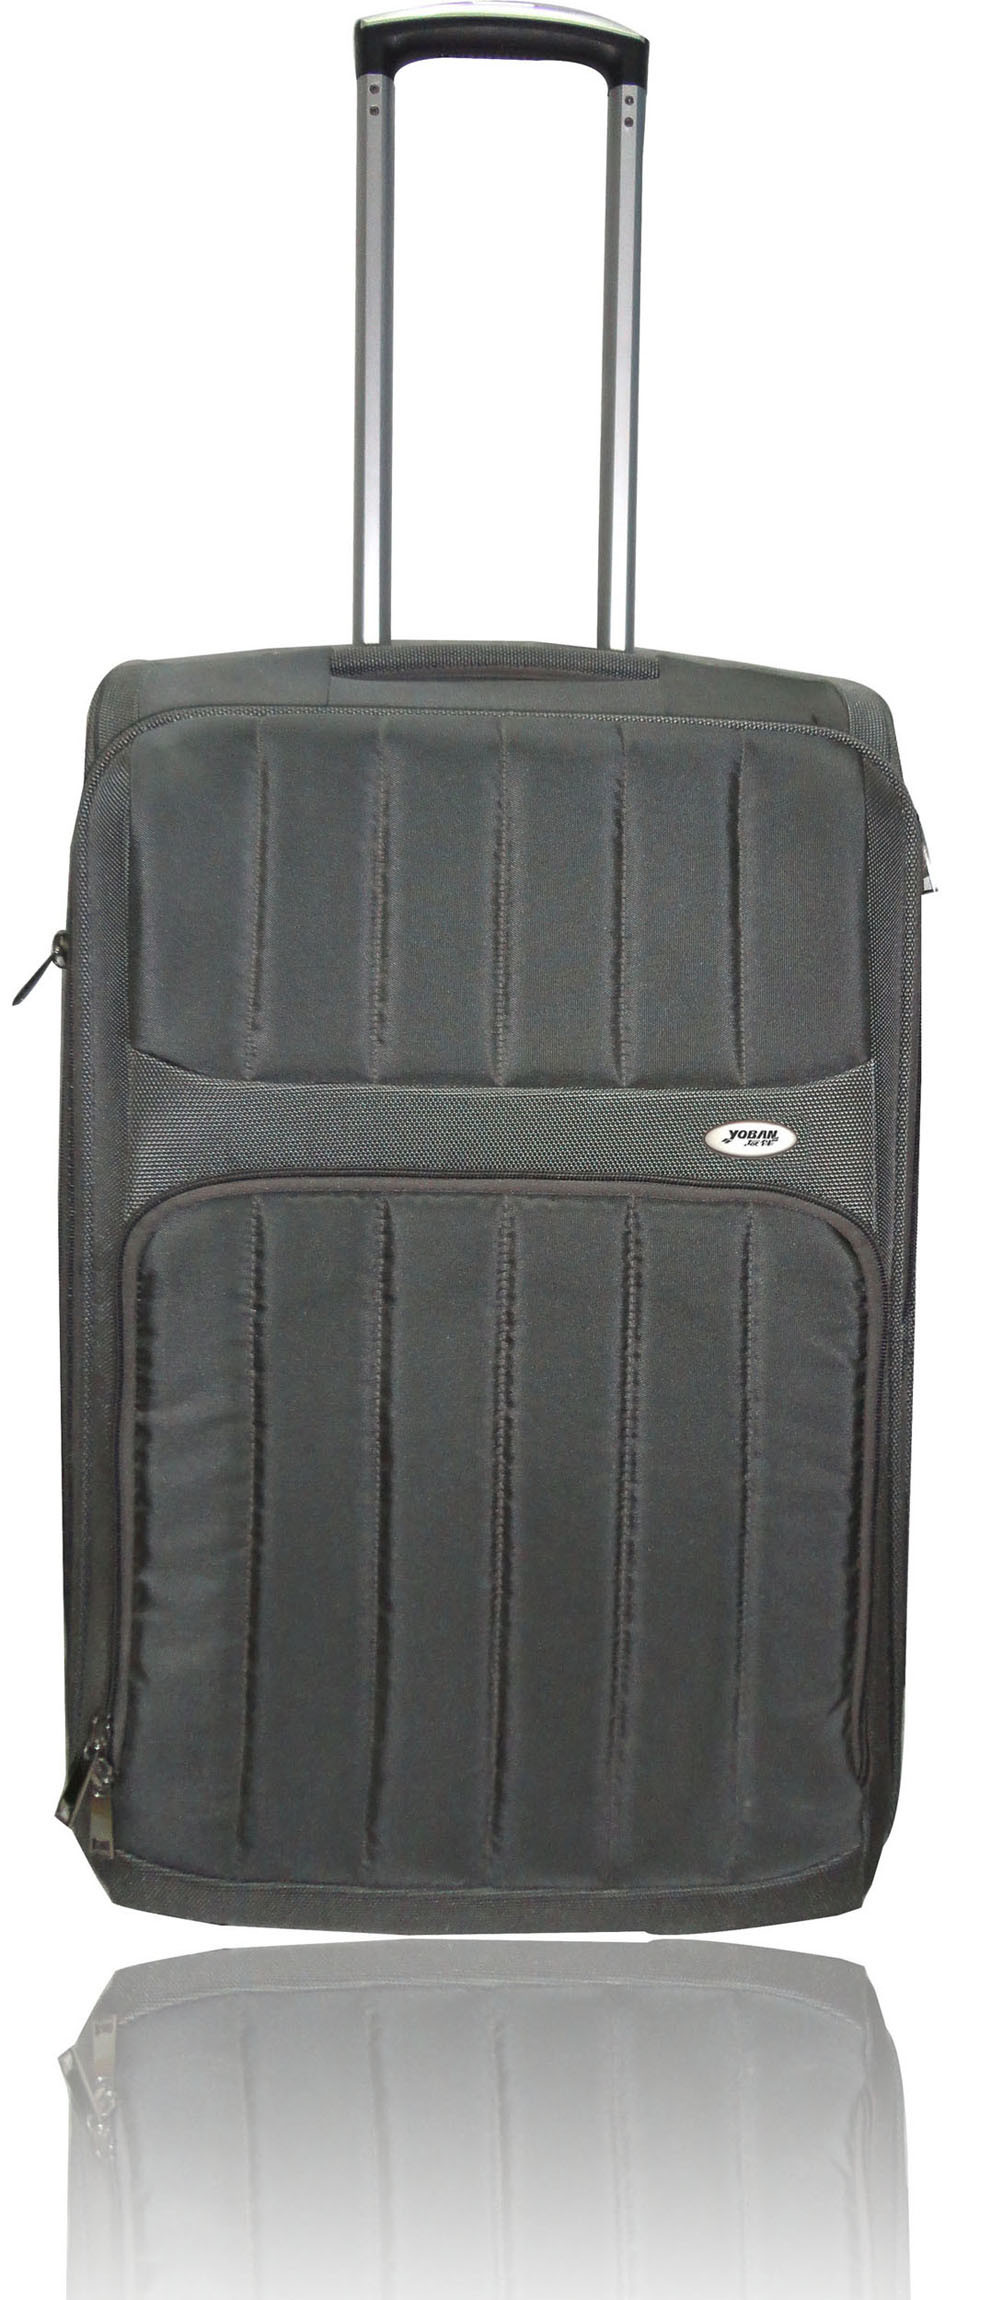 Soft Luggage Case (Y-216)